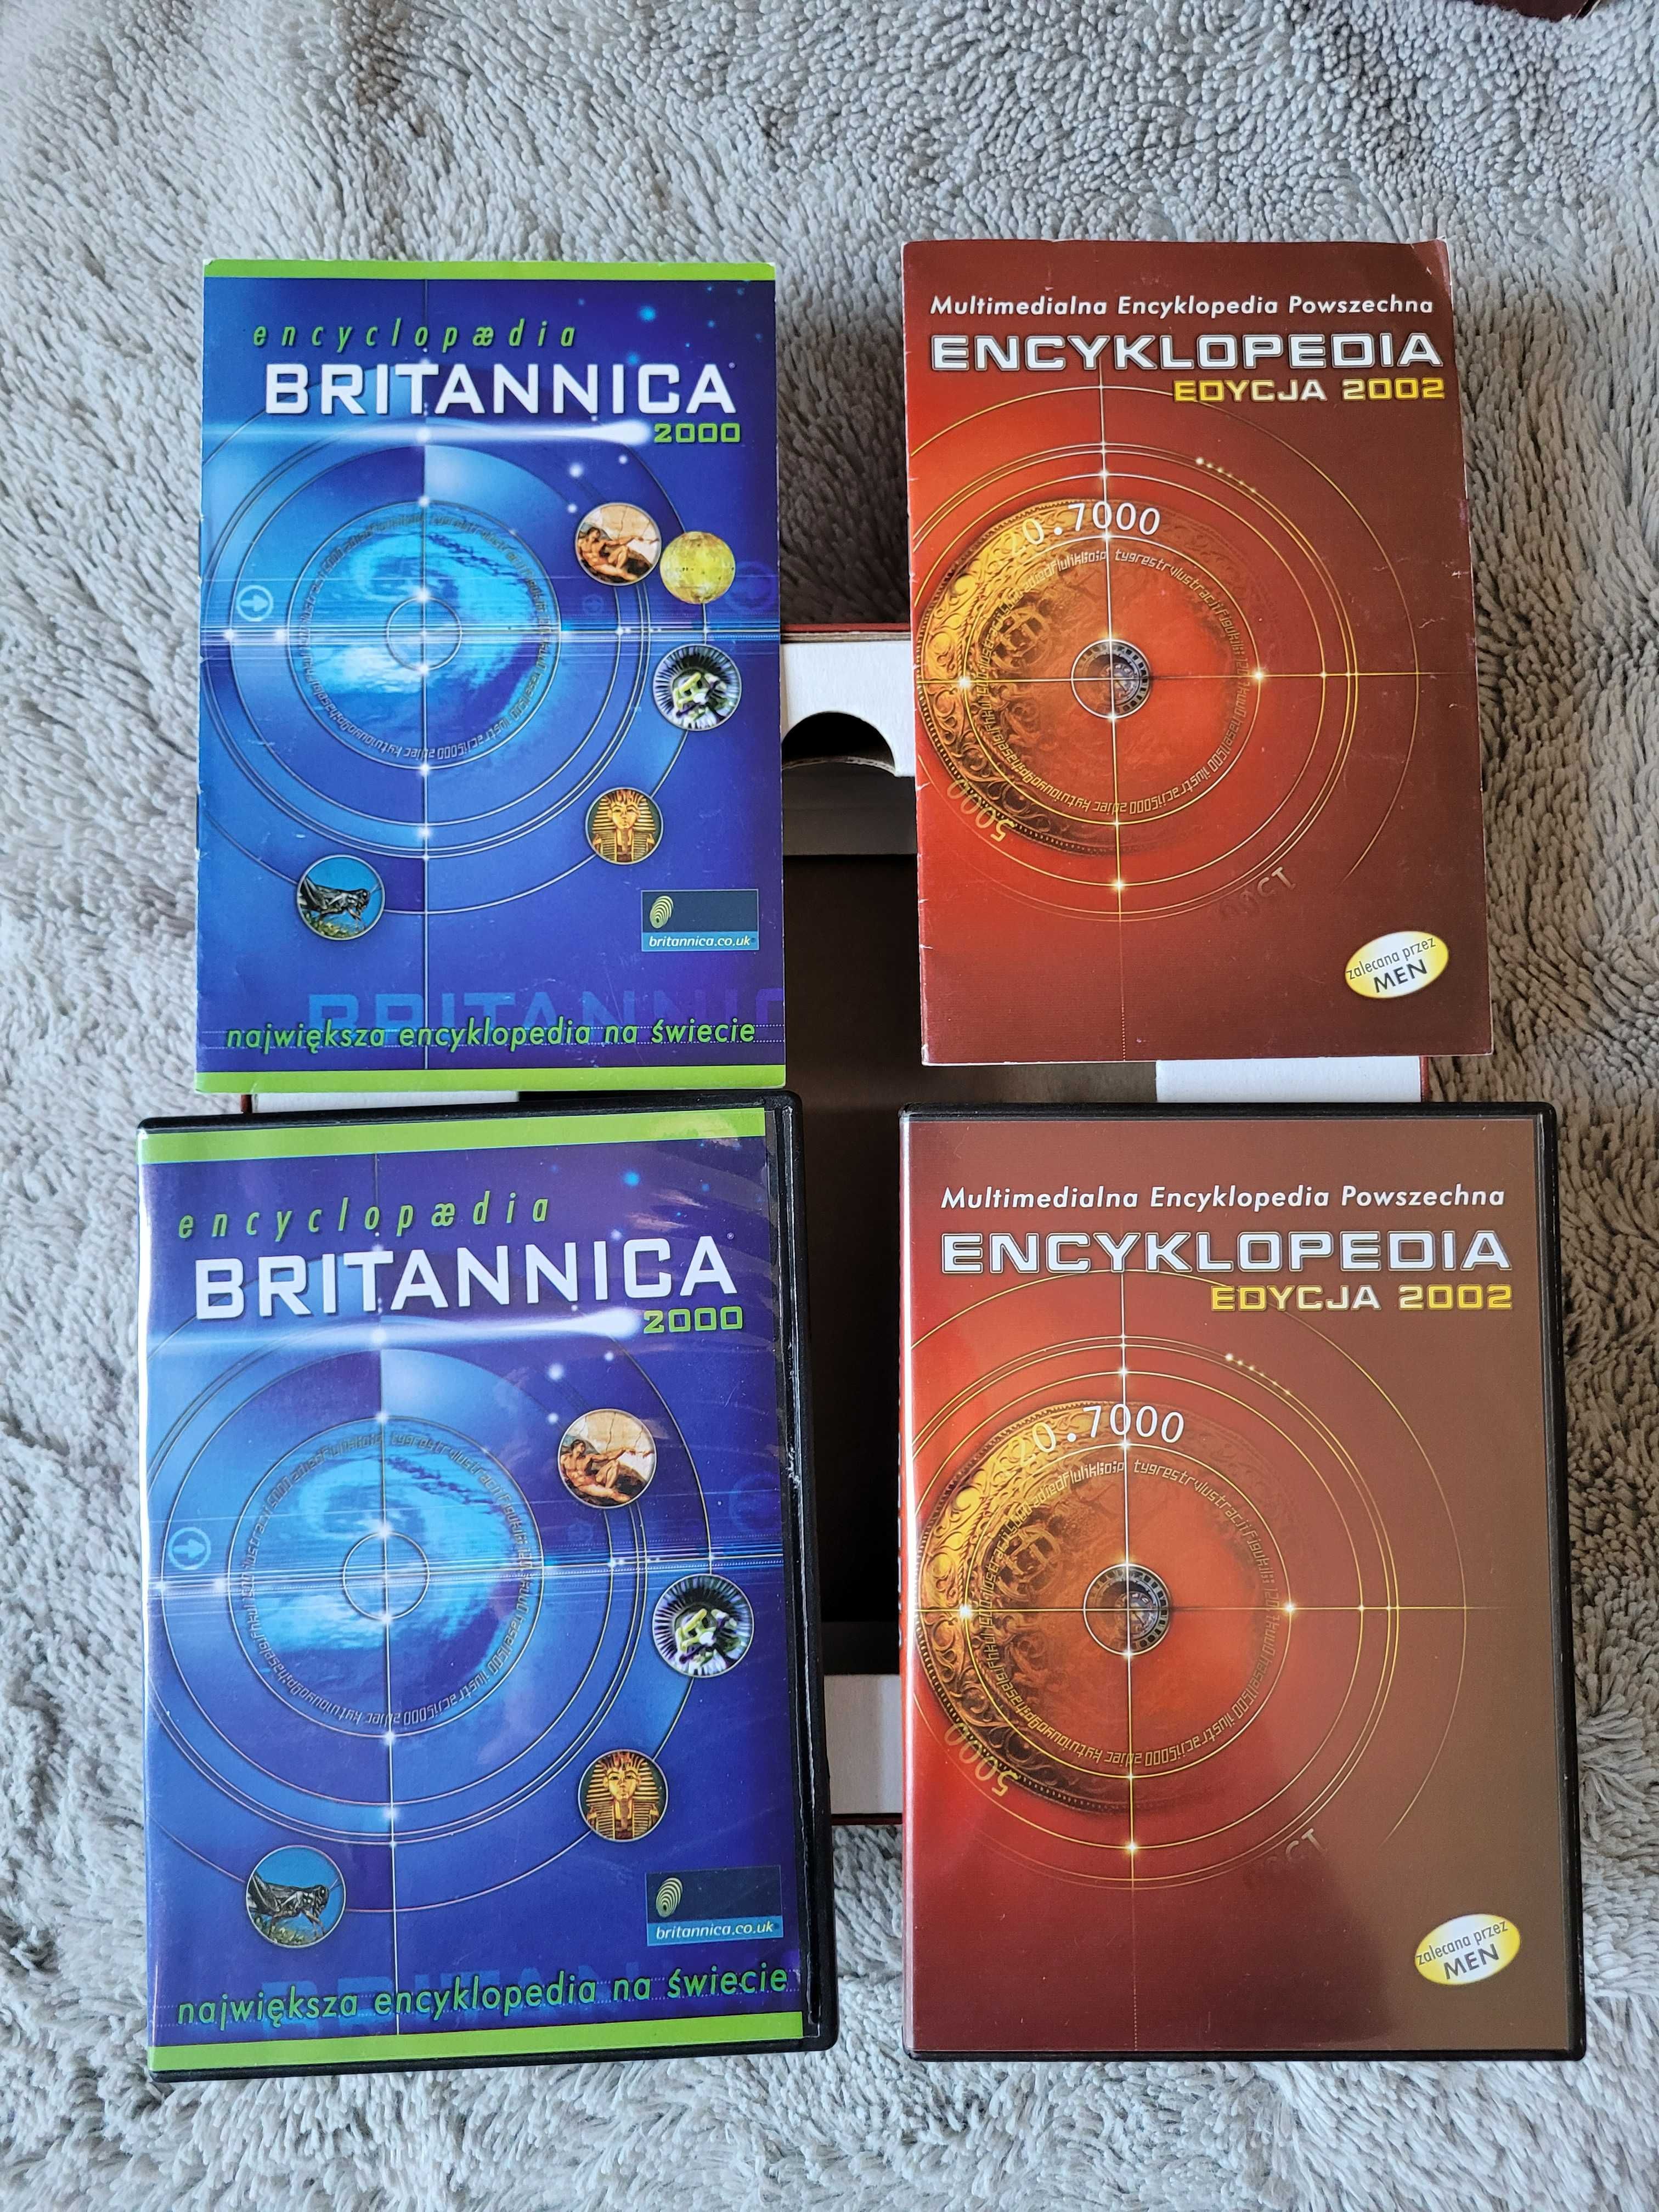 OKAZJA! Multimedialna encyklopedia wiedzy powszechnej PC 5 płyt!